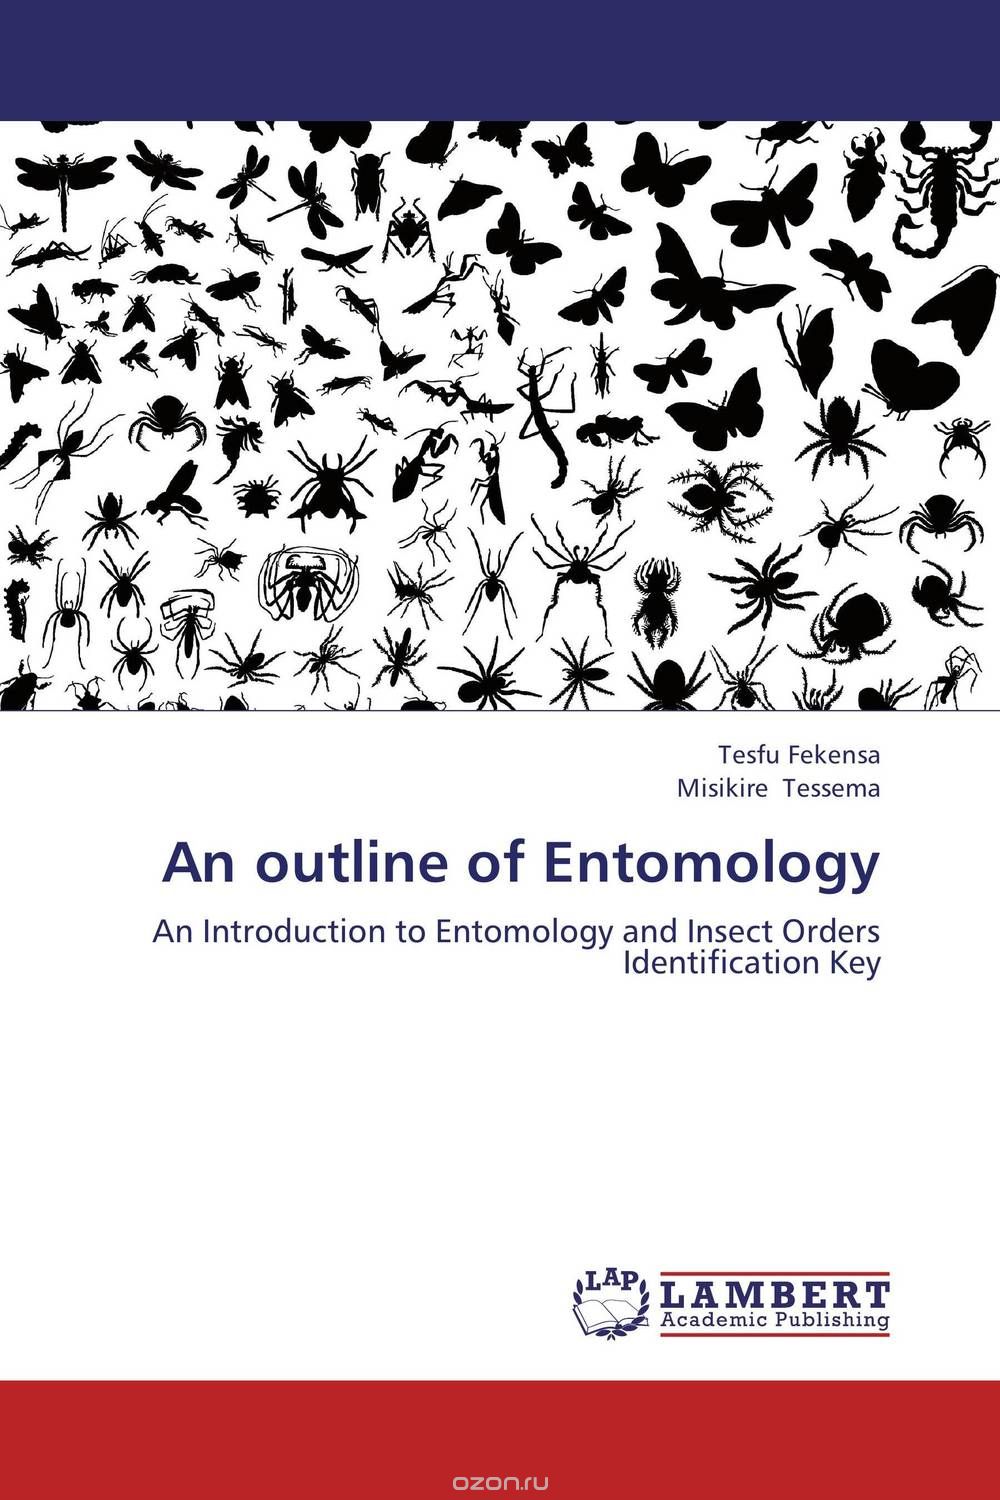 Скачать книгу "An outline of Entomology"